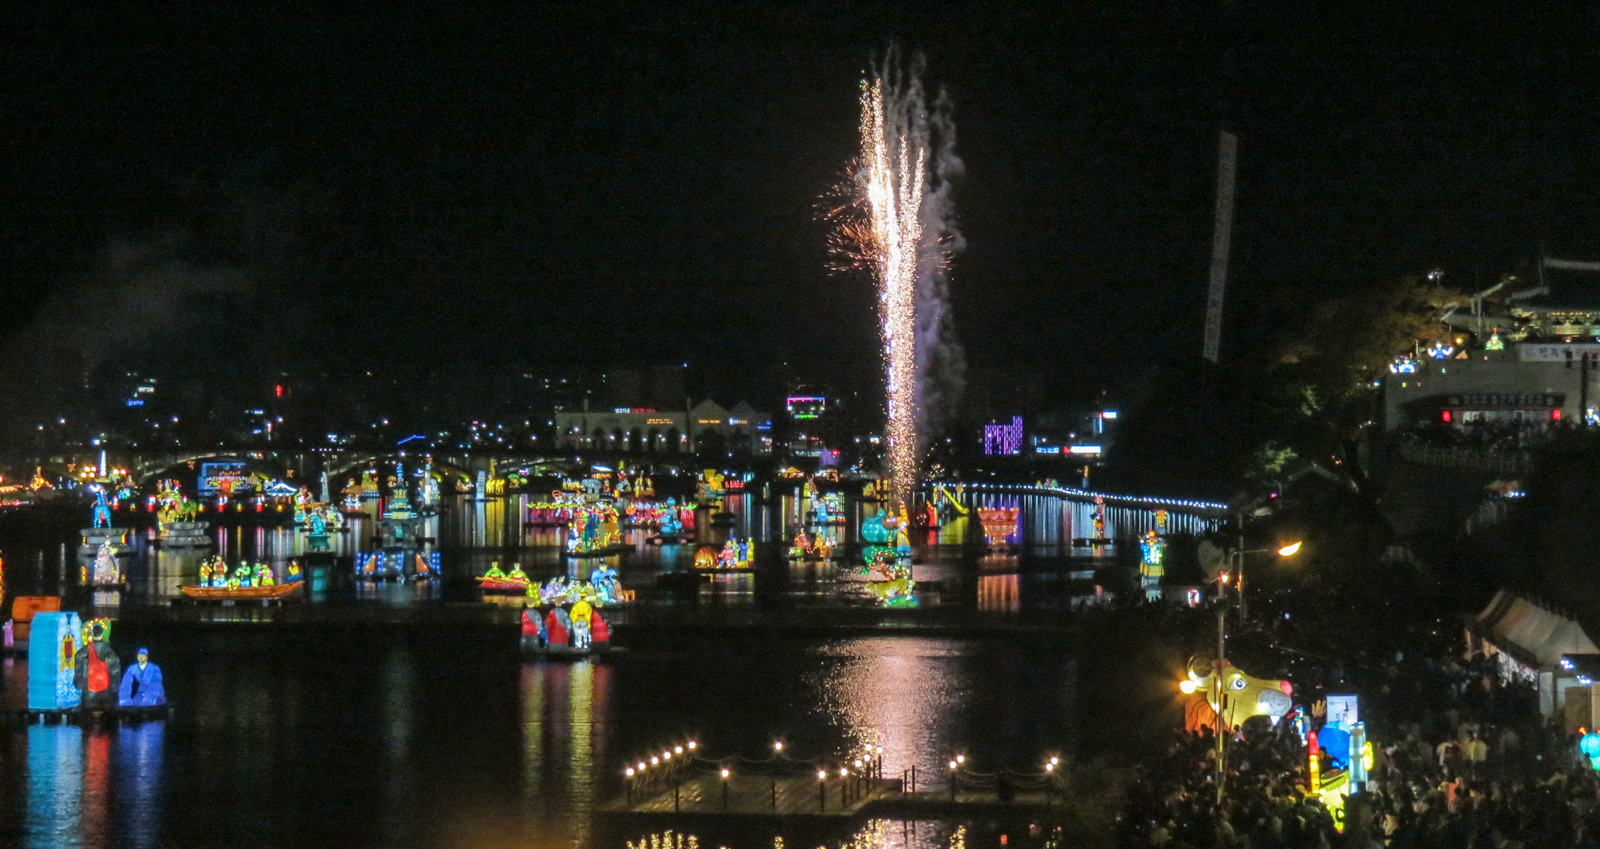 jinju-lantern-festival-fireworks